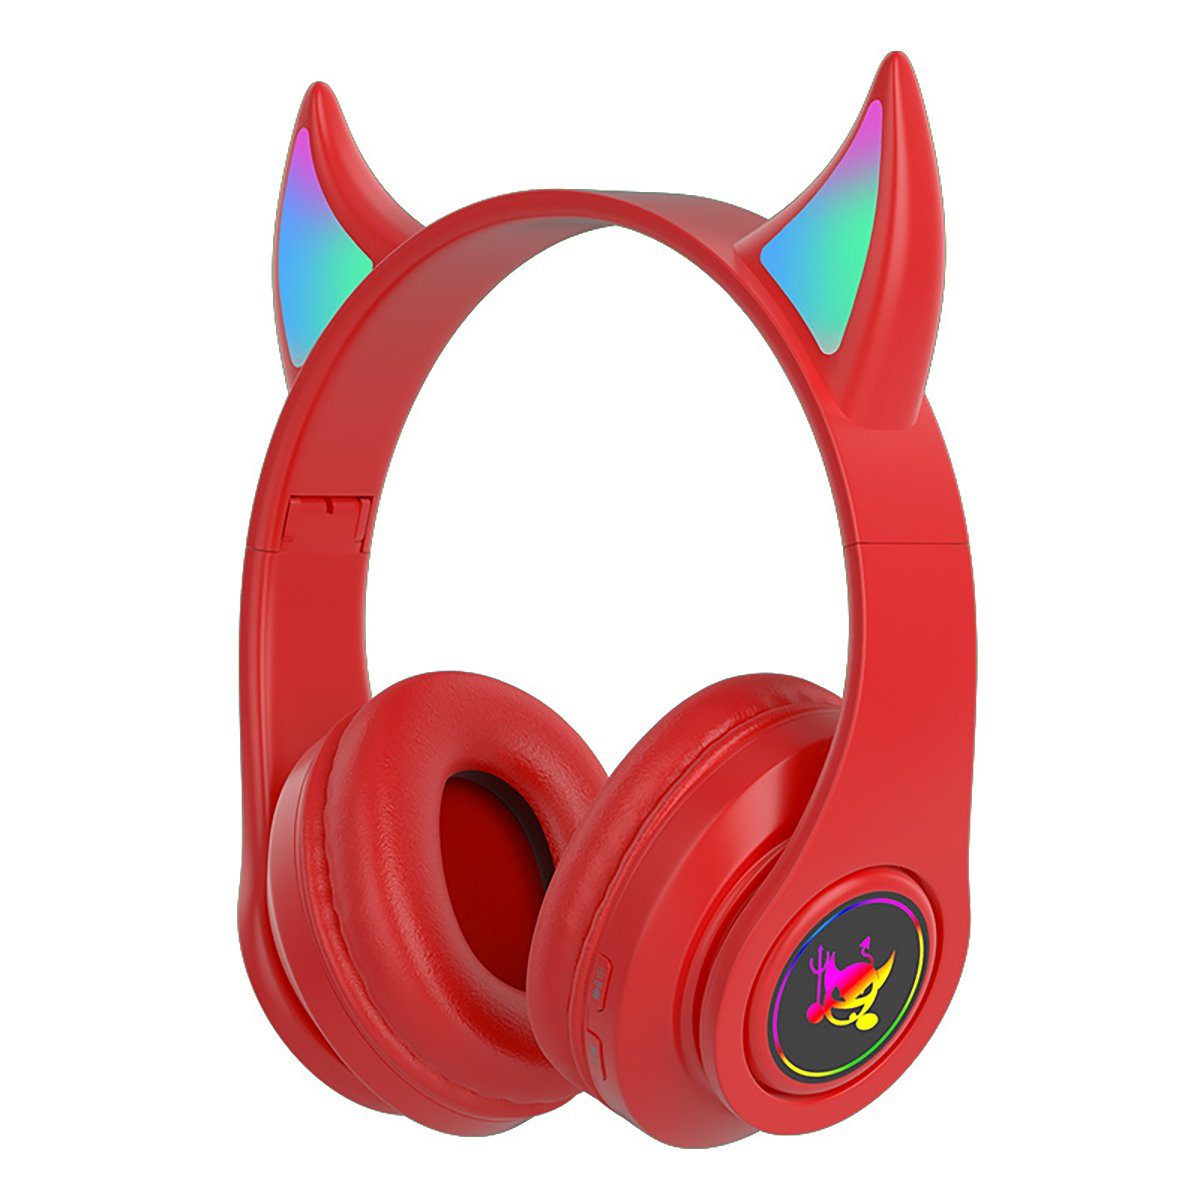 Insma On-Ear-Kopfhörer (Kabelloses Gaming-Headset, Stero bluetooth 5.0 Kopfhörer LED-Licht) Rot